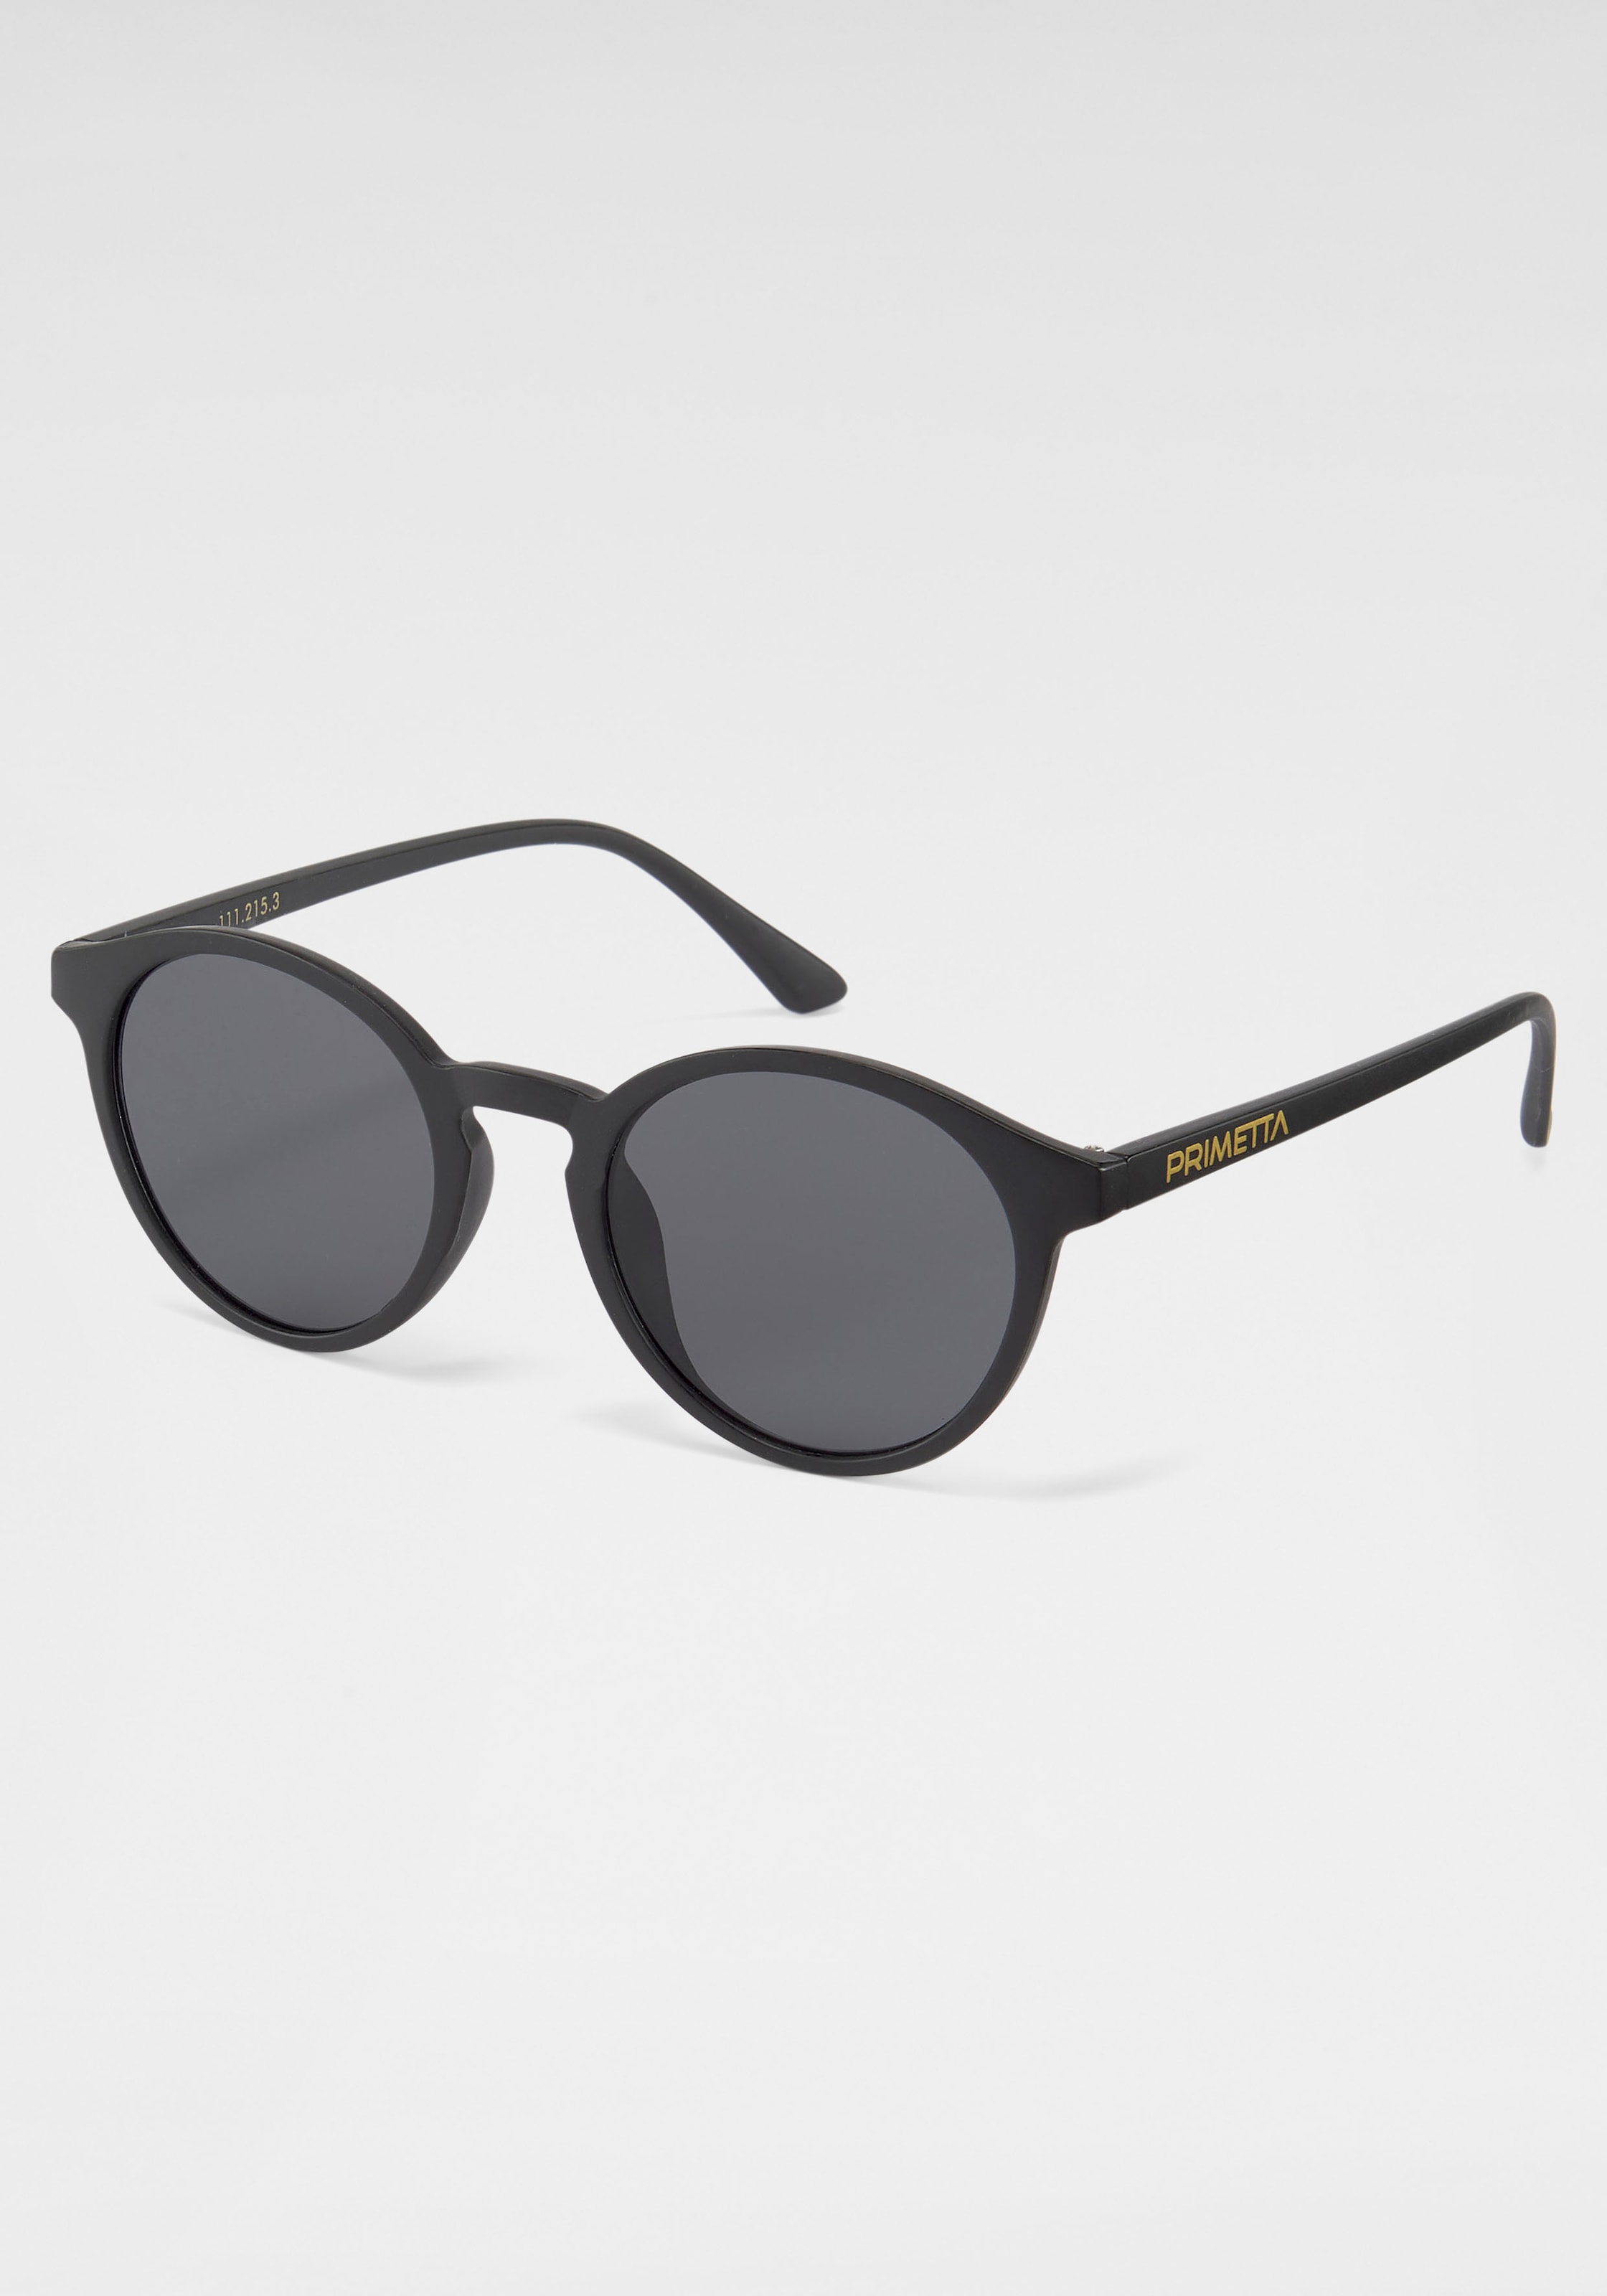 OTTO Online im PRIMETTA Eyewear Sonnenbrille Shop